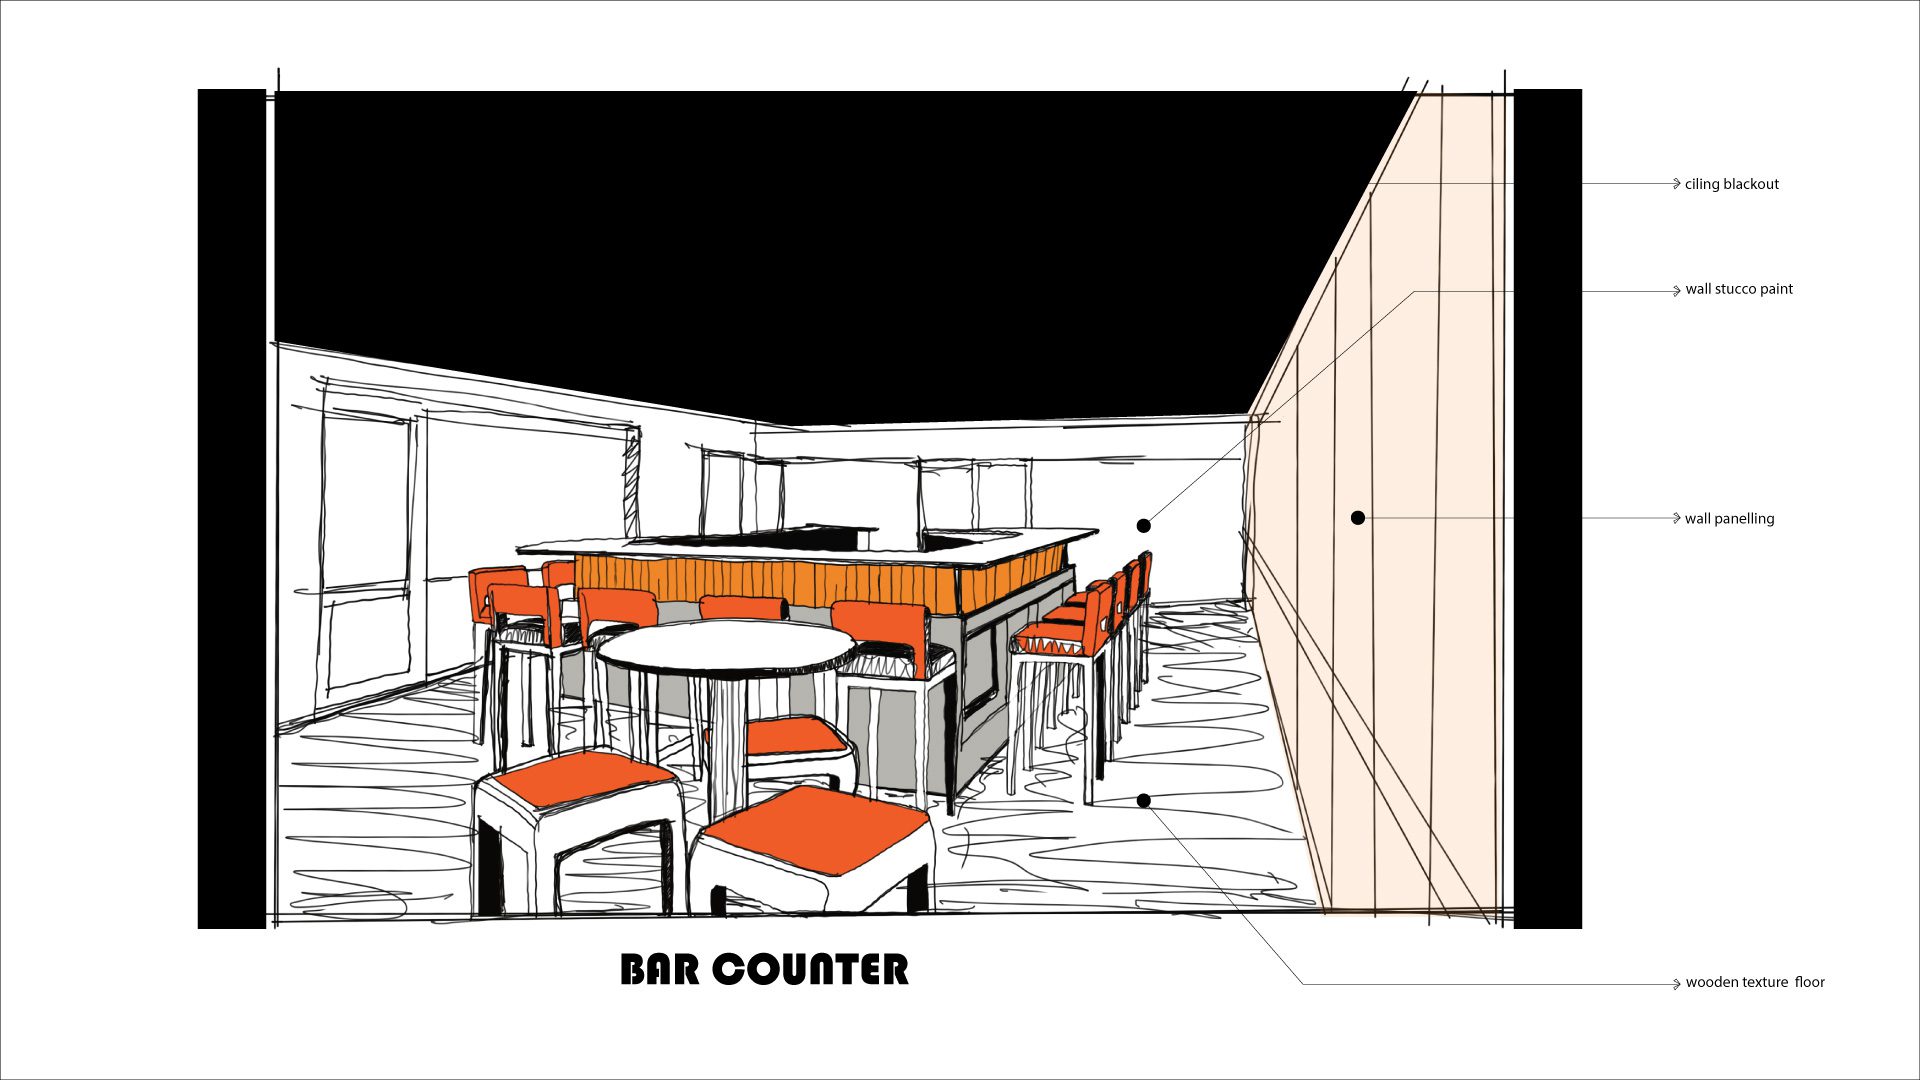 bar counter sketch for bar interior design in dhaka